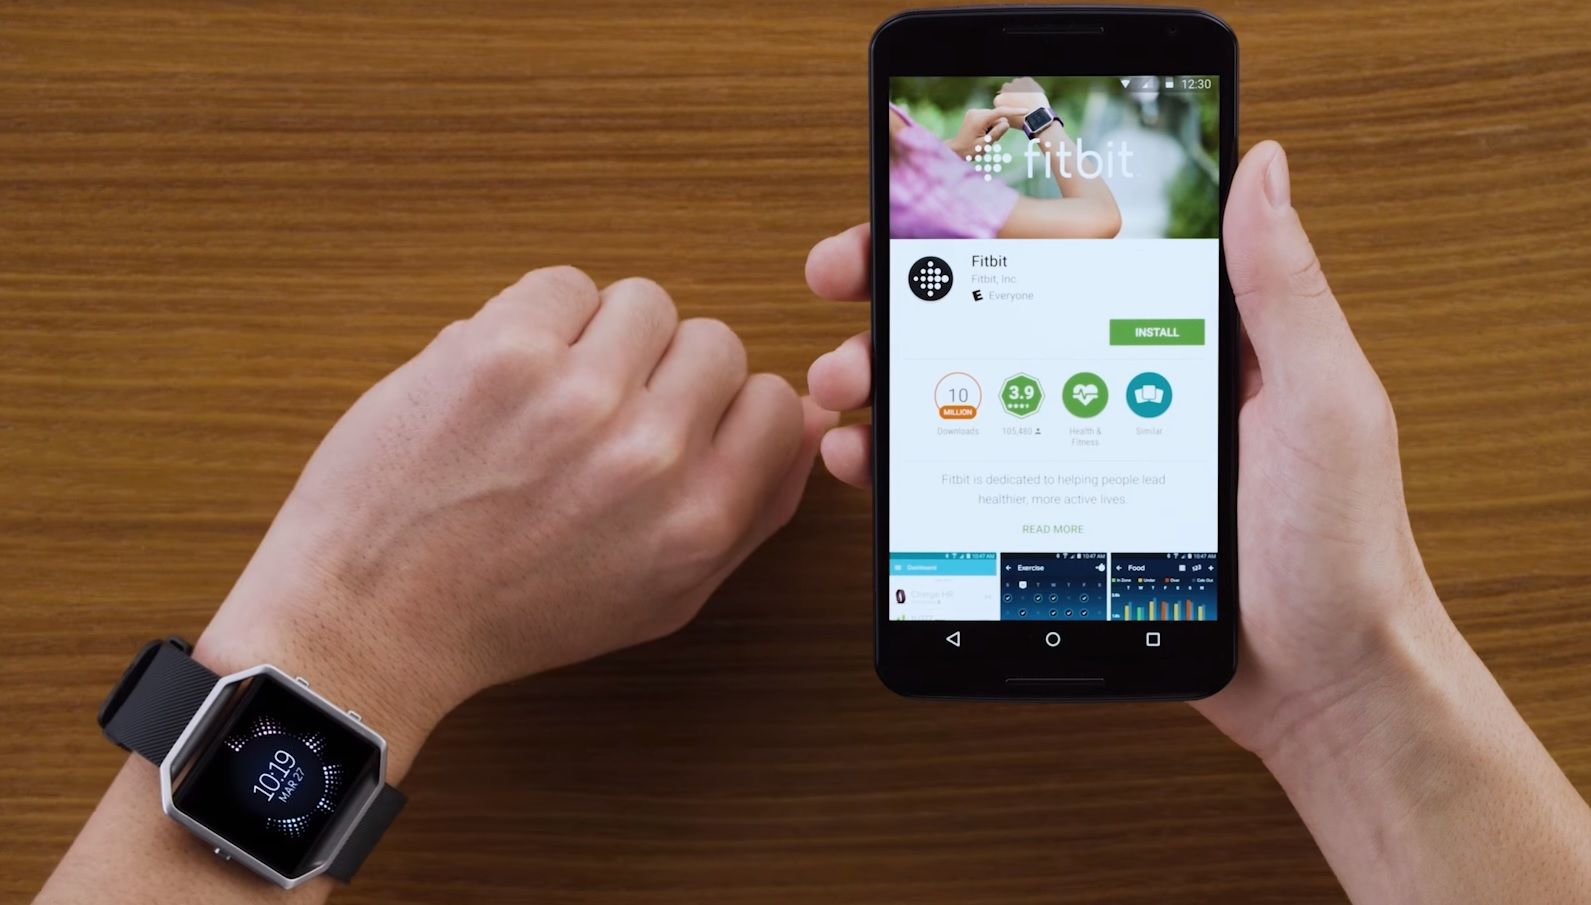 Hướng dẫn cài đặt, kết nối Fitbit với iPhone, Android và máy tính 1